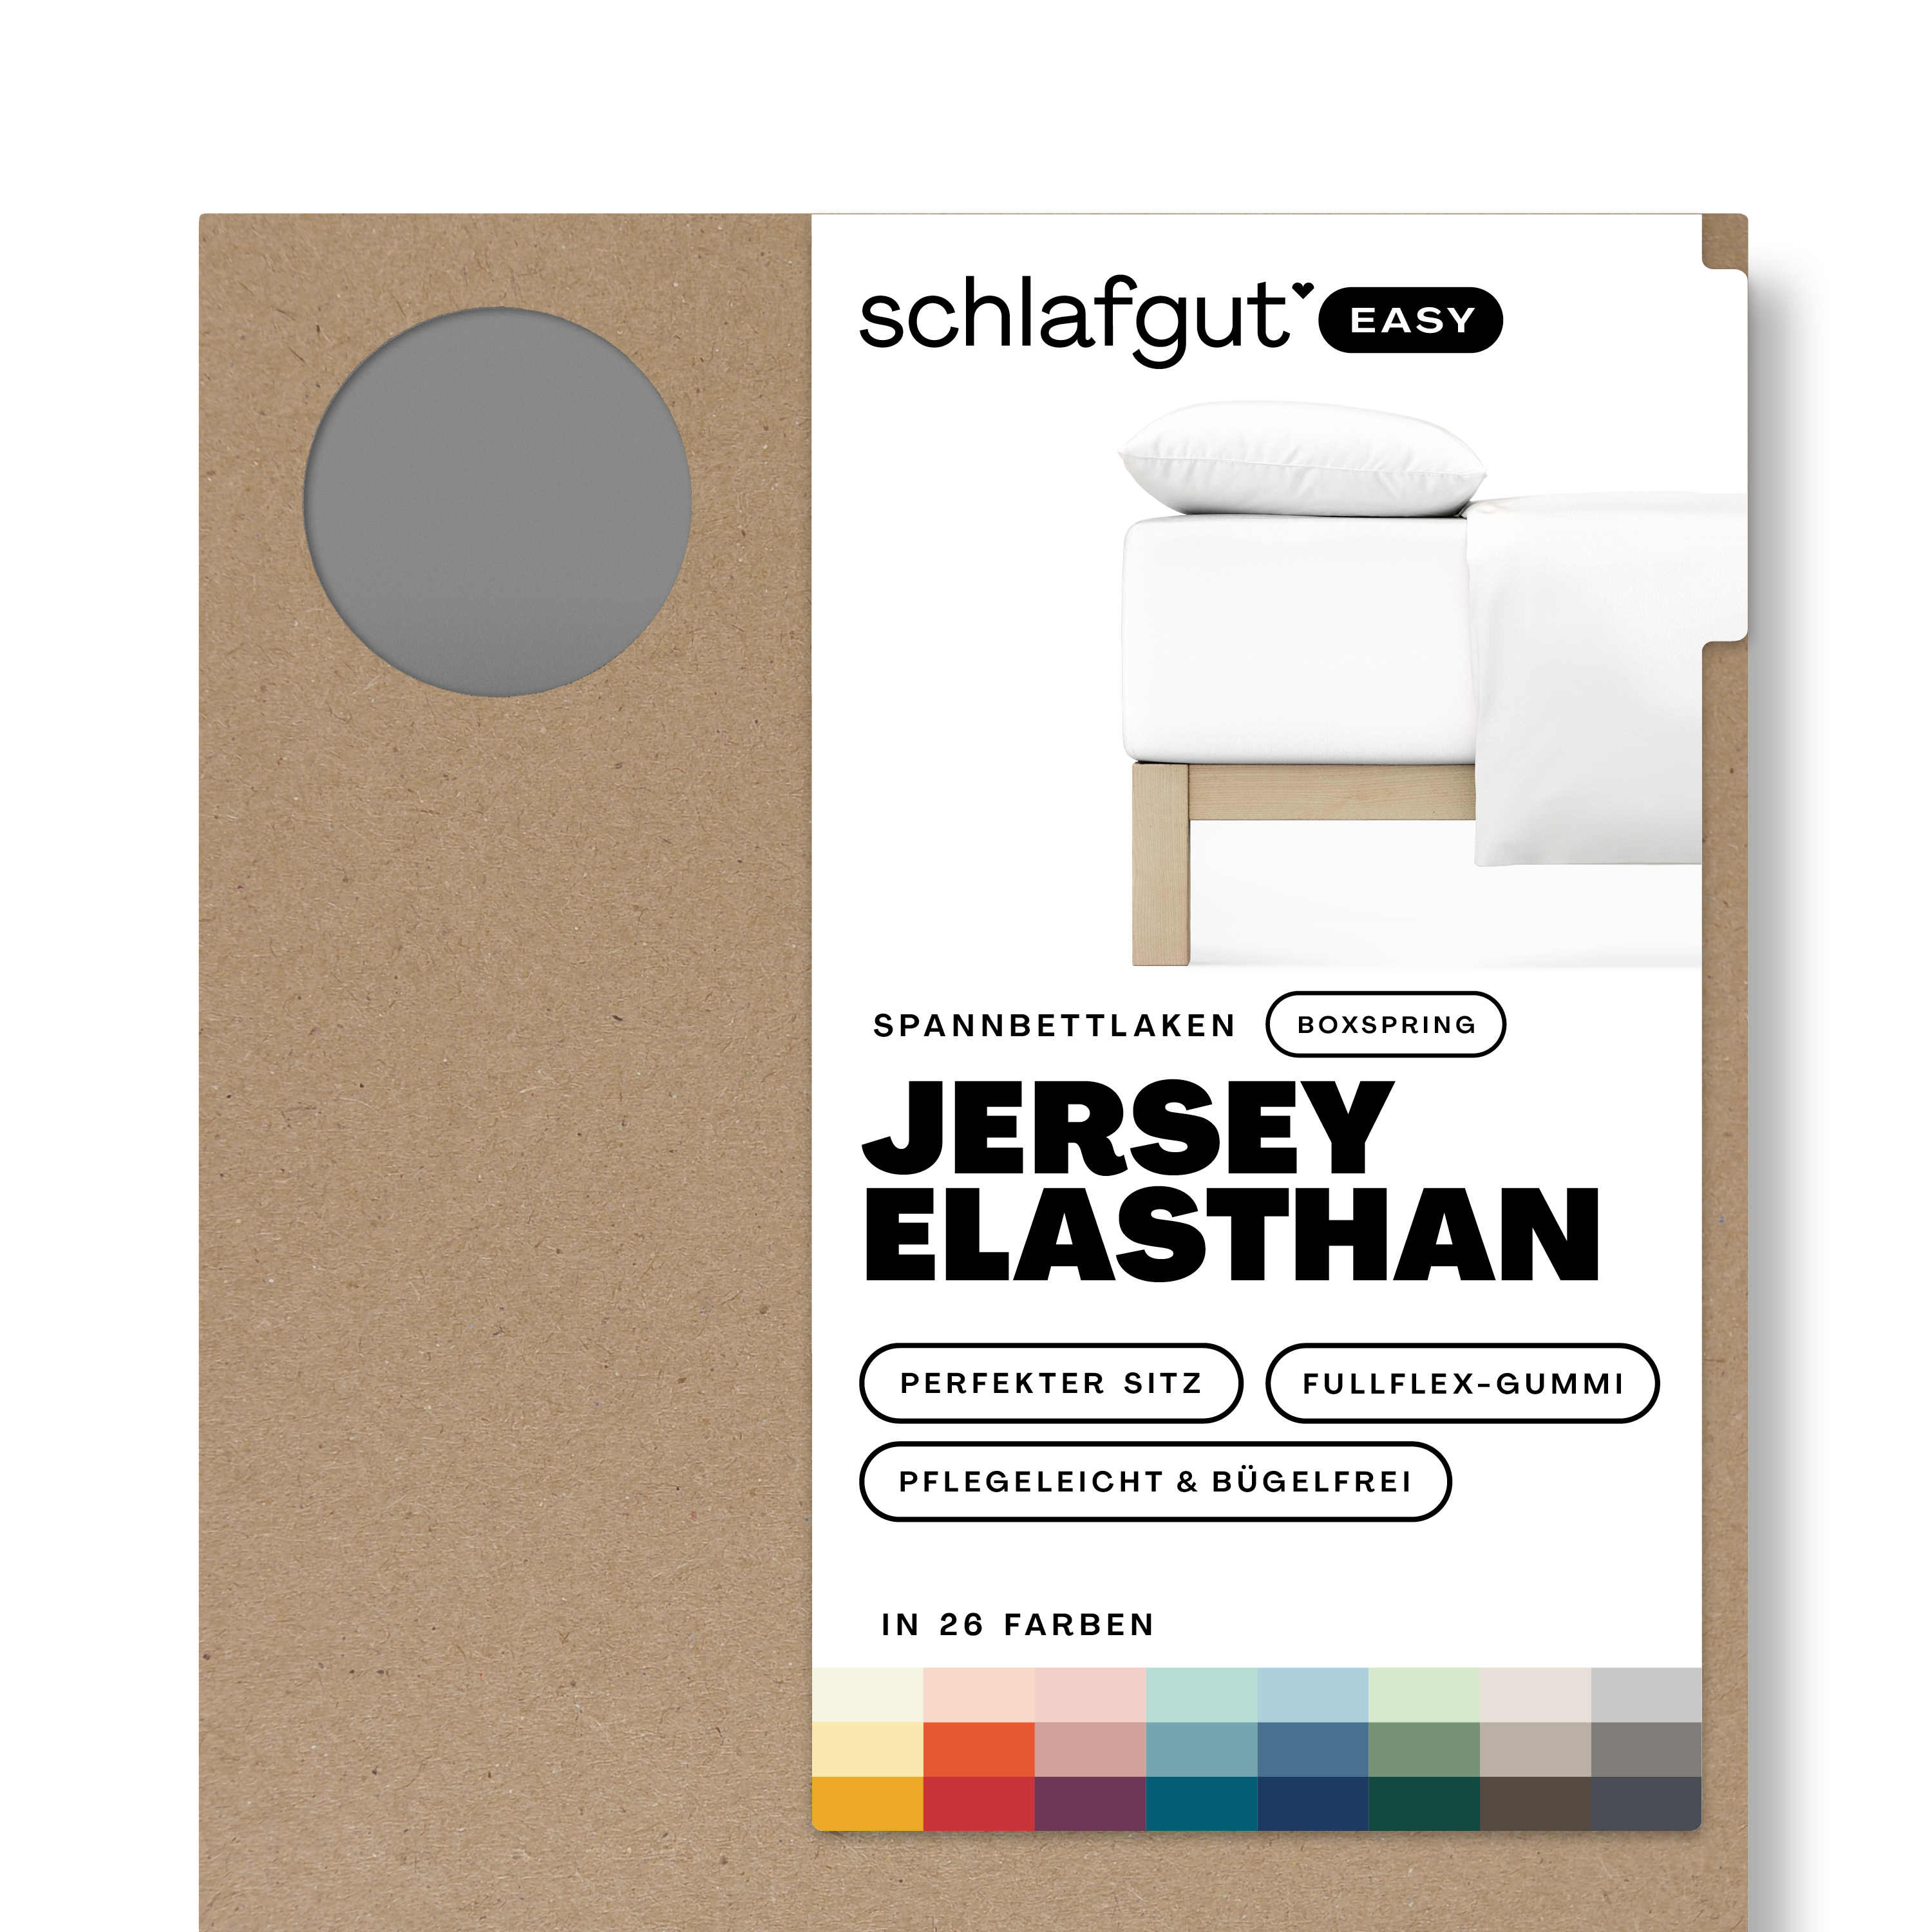 Das Produktbild vom Spannbettlaken der Reihe Easy Elasthan Boxspring in Farbe grey mid von Schlafgut